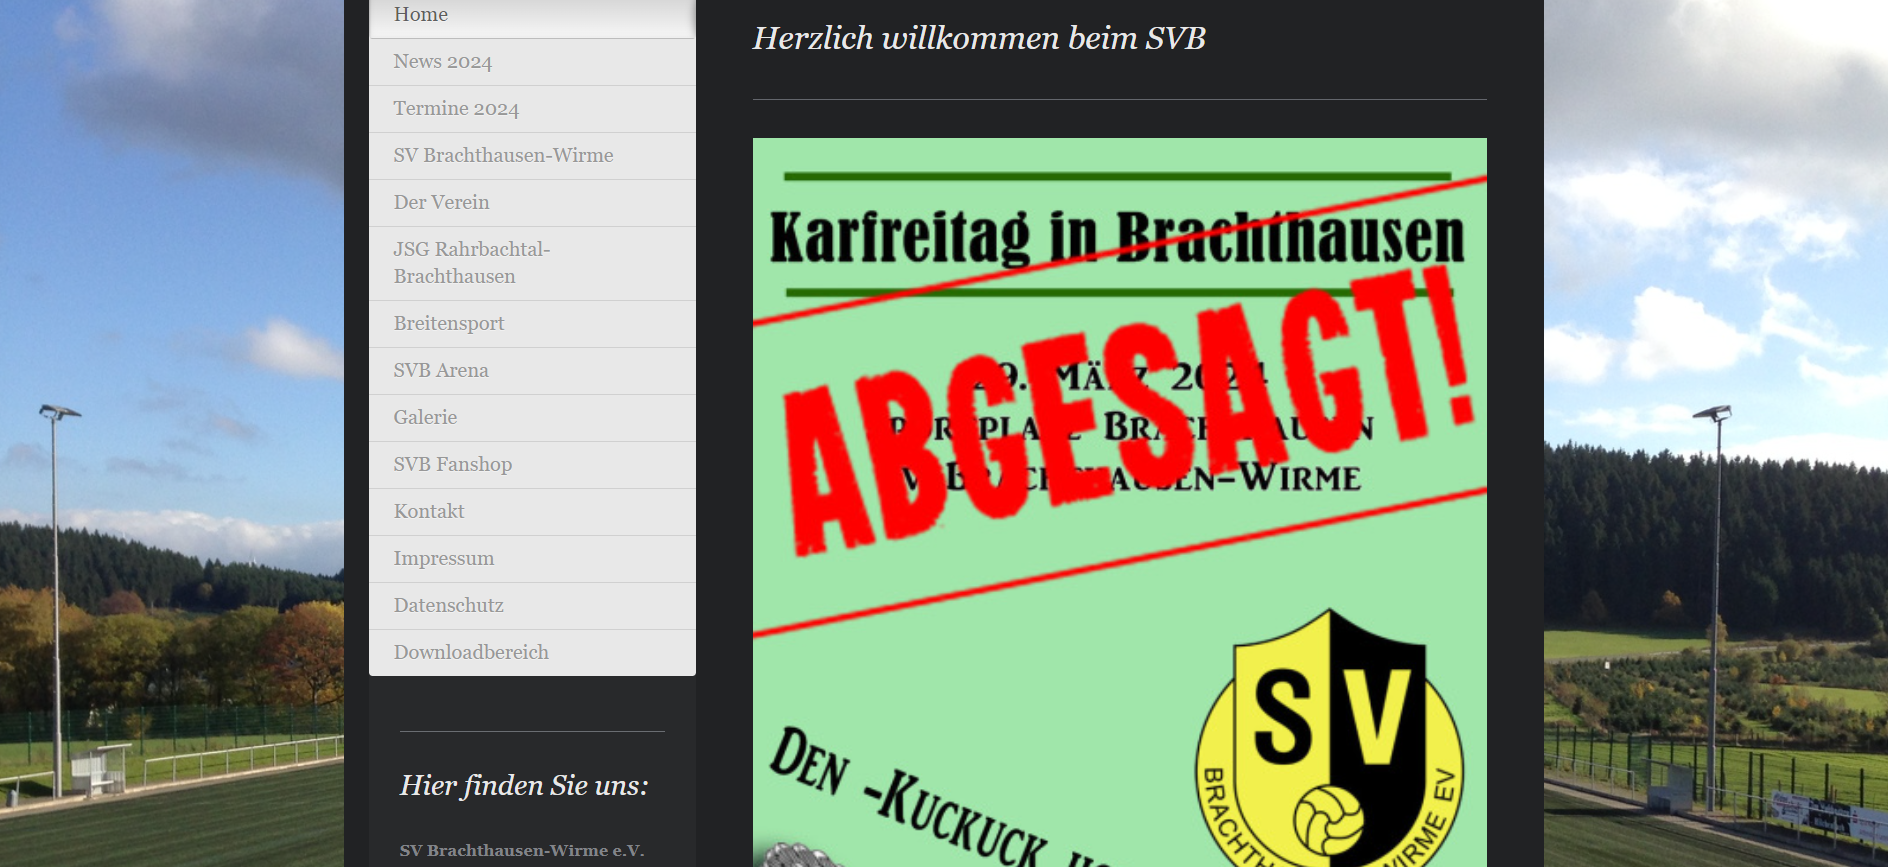 Der SV Brachthausen-Wirme verkündet die Absage auf seiner Website. von SV Brachthausen-Wirme